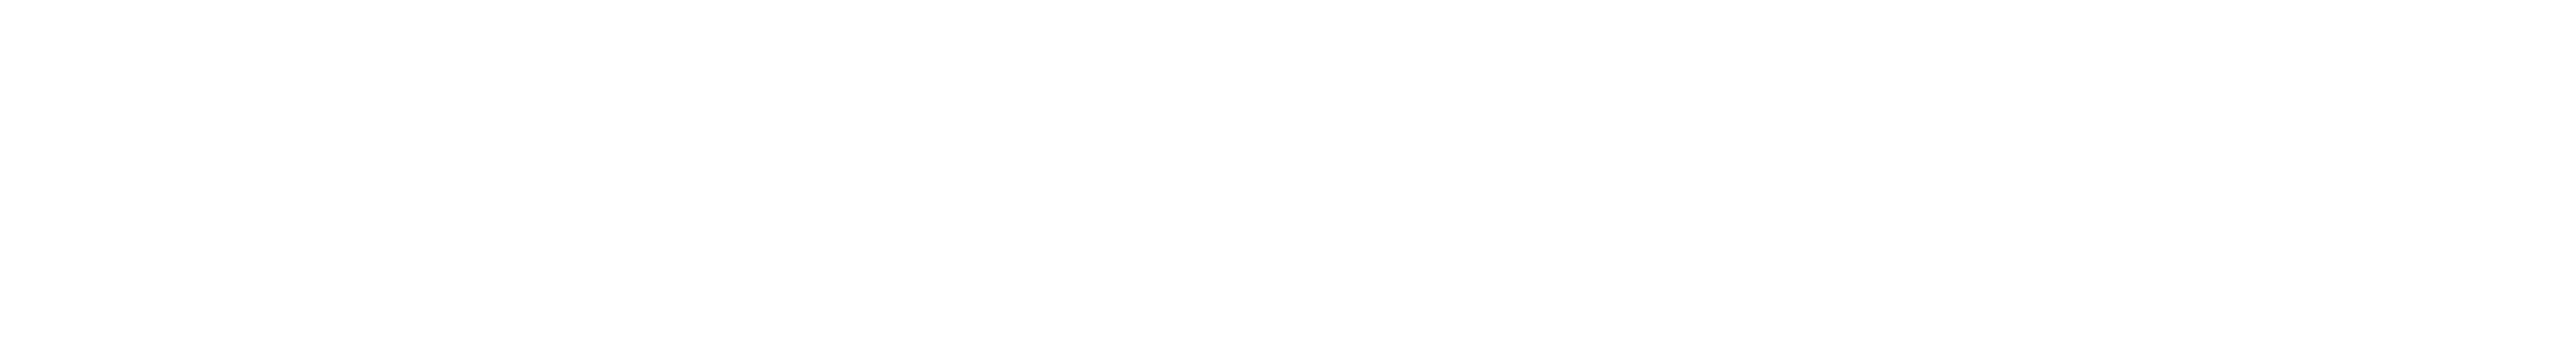 BODEGA Logo